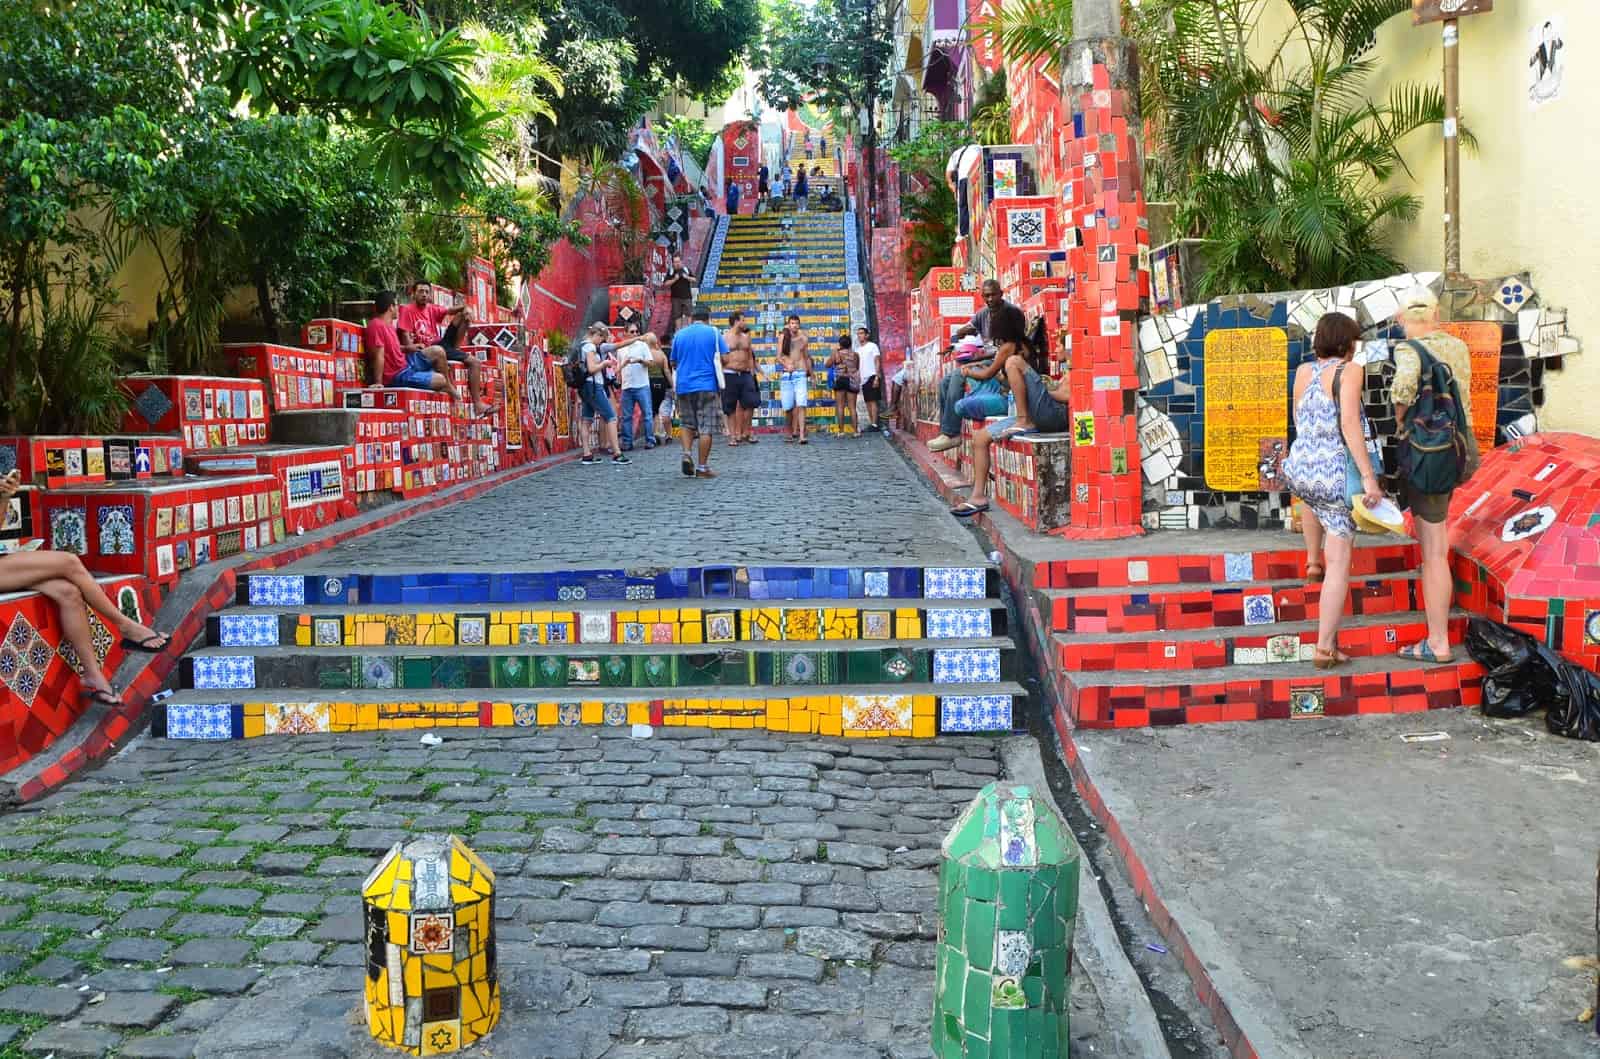 Escadaria Selarón in Rio de Janeiro, Brazil